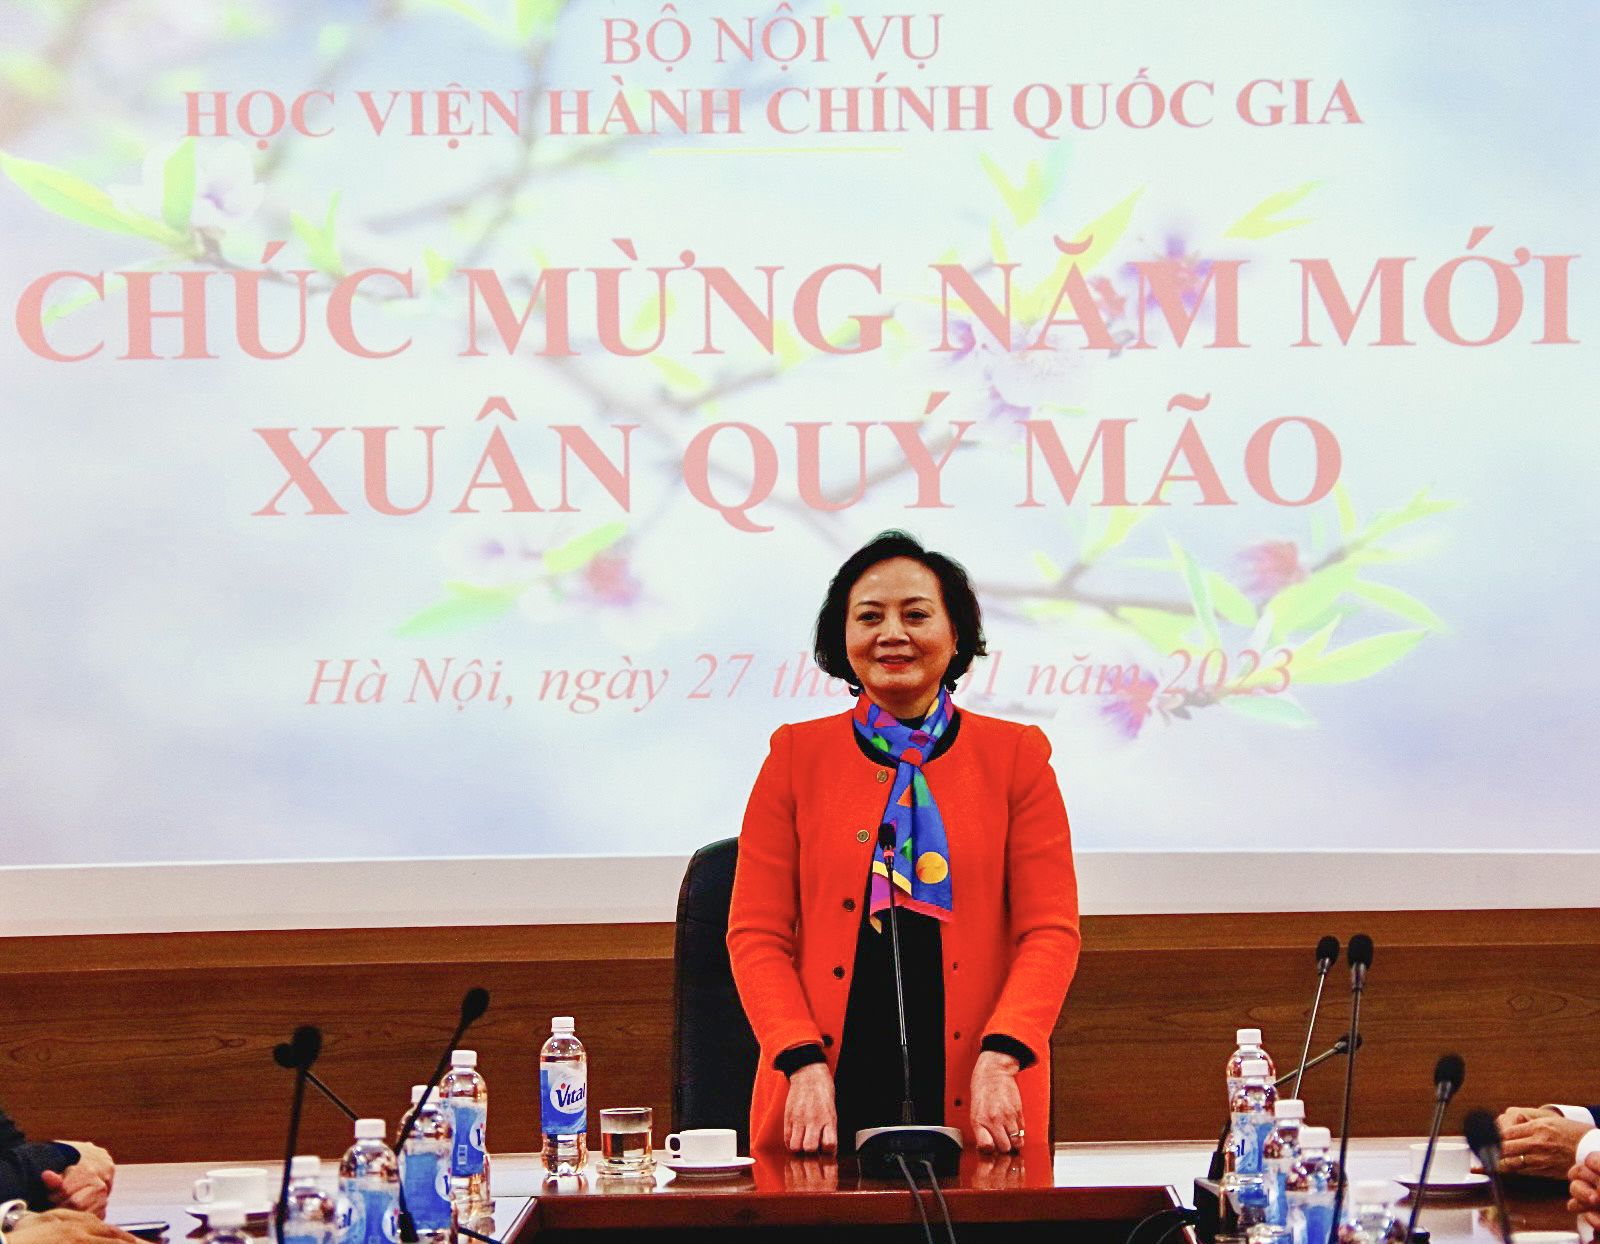 Đồng chí Phạm Thị Thanh Trà, Ủy viên BCH Trung ương Đảng, Bộ trưởng Bộ Nội vụ phát biểu chúc mừng năm mới tập thể Học viện.